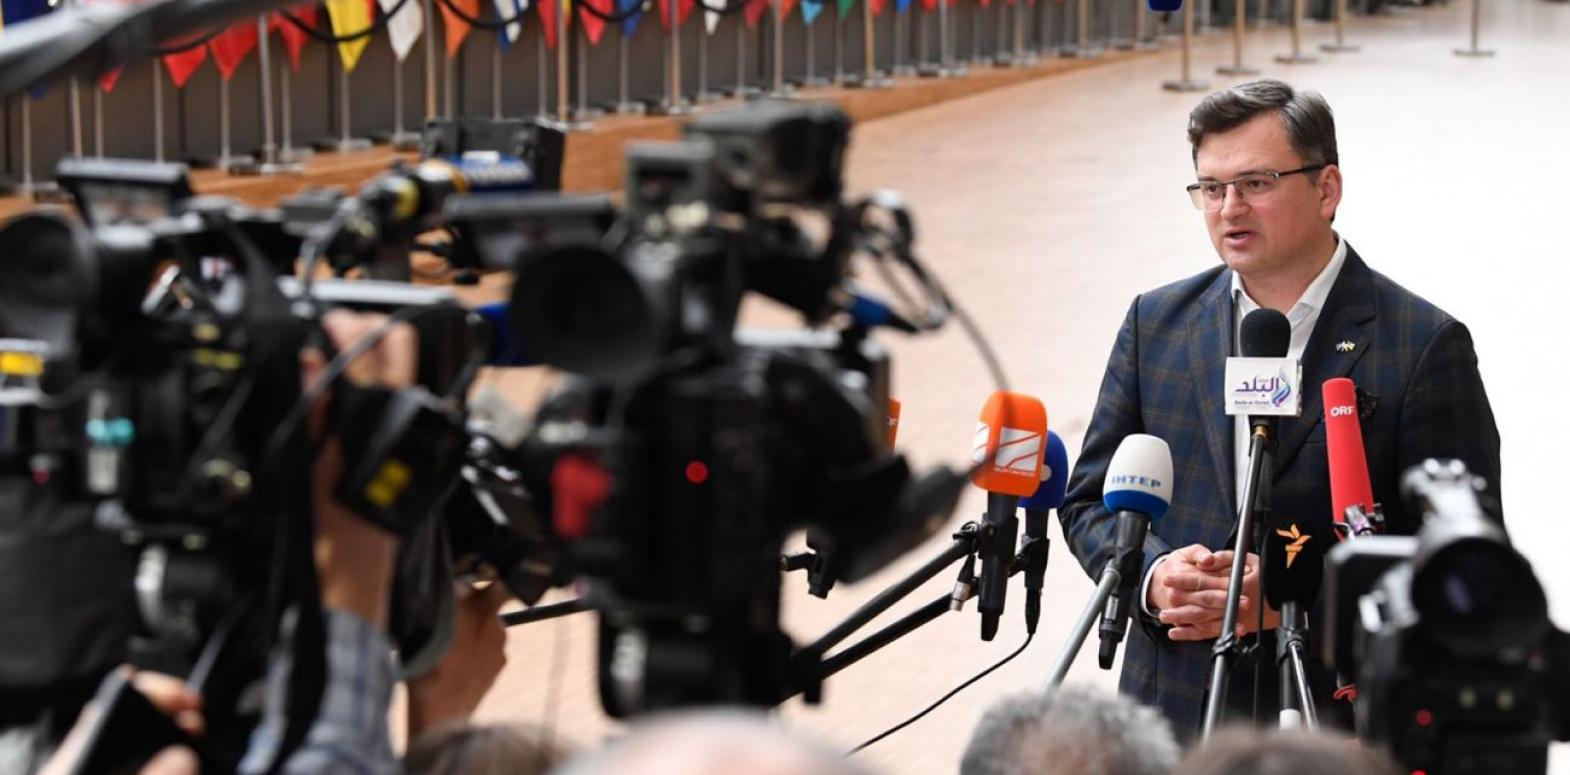 Сильный политический шаг. Кулеба обосновал быстрое предоставление Украине статуса кандидата в члены ЕС